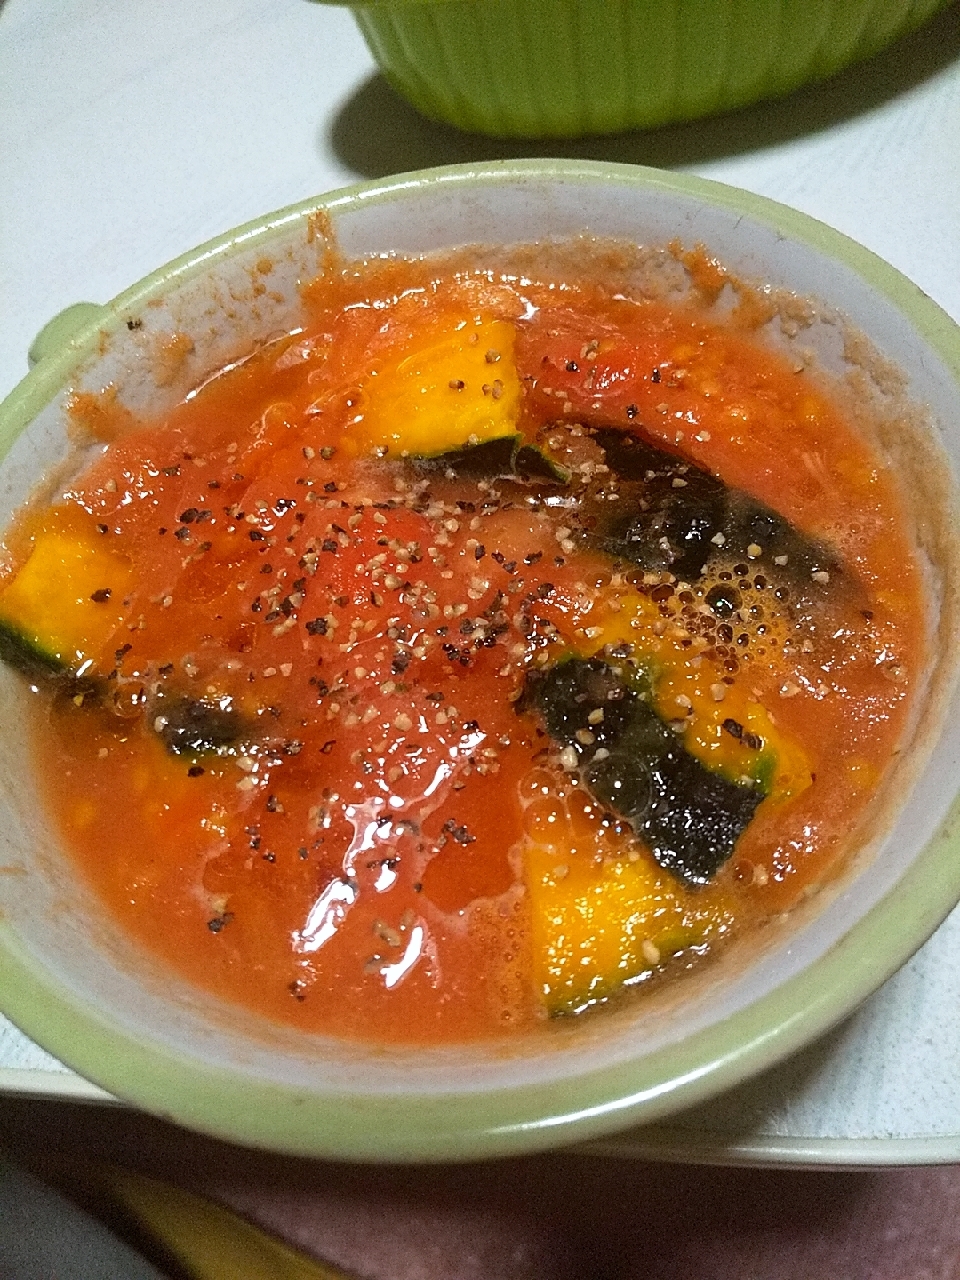 ツナ缶の汁活用★レンジでかぼちゃ入りトマトスープ